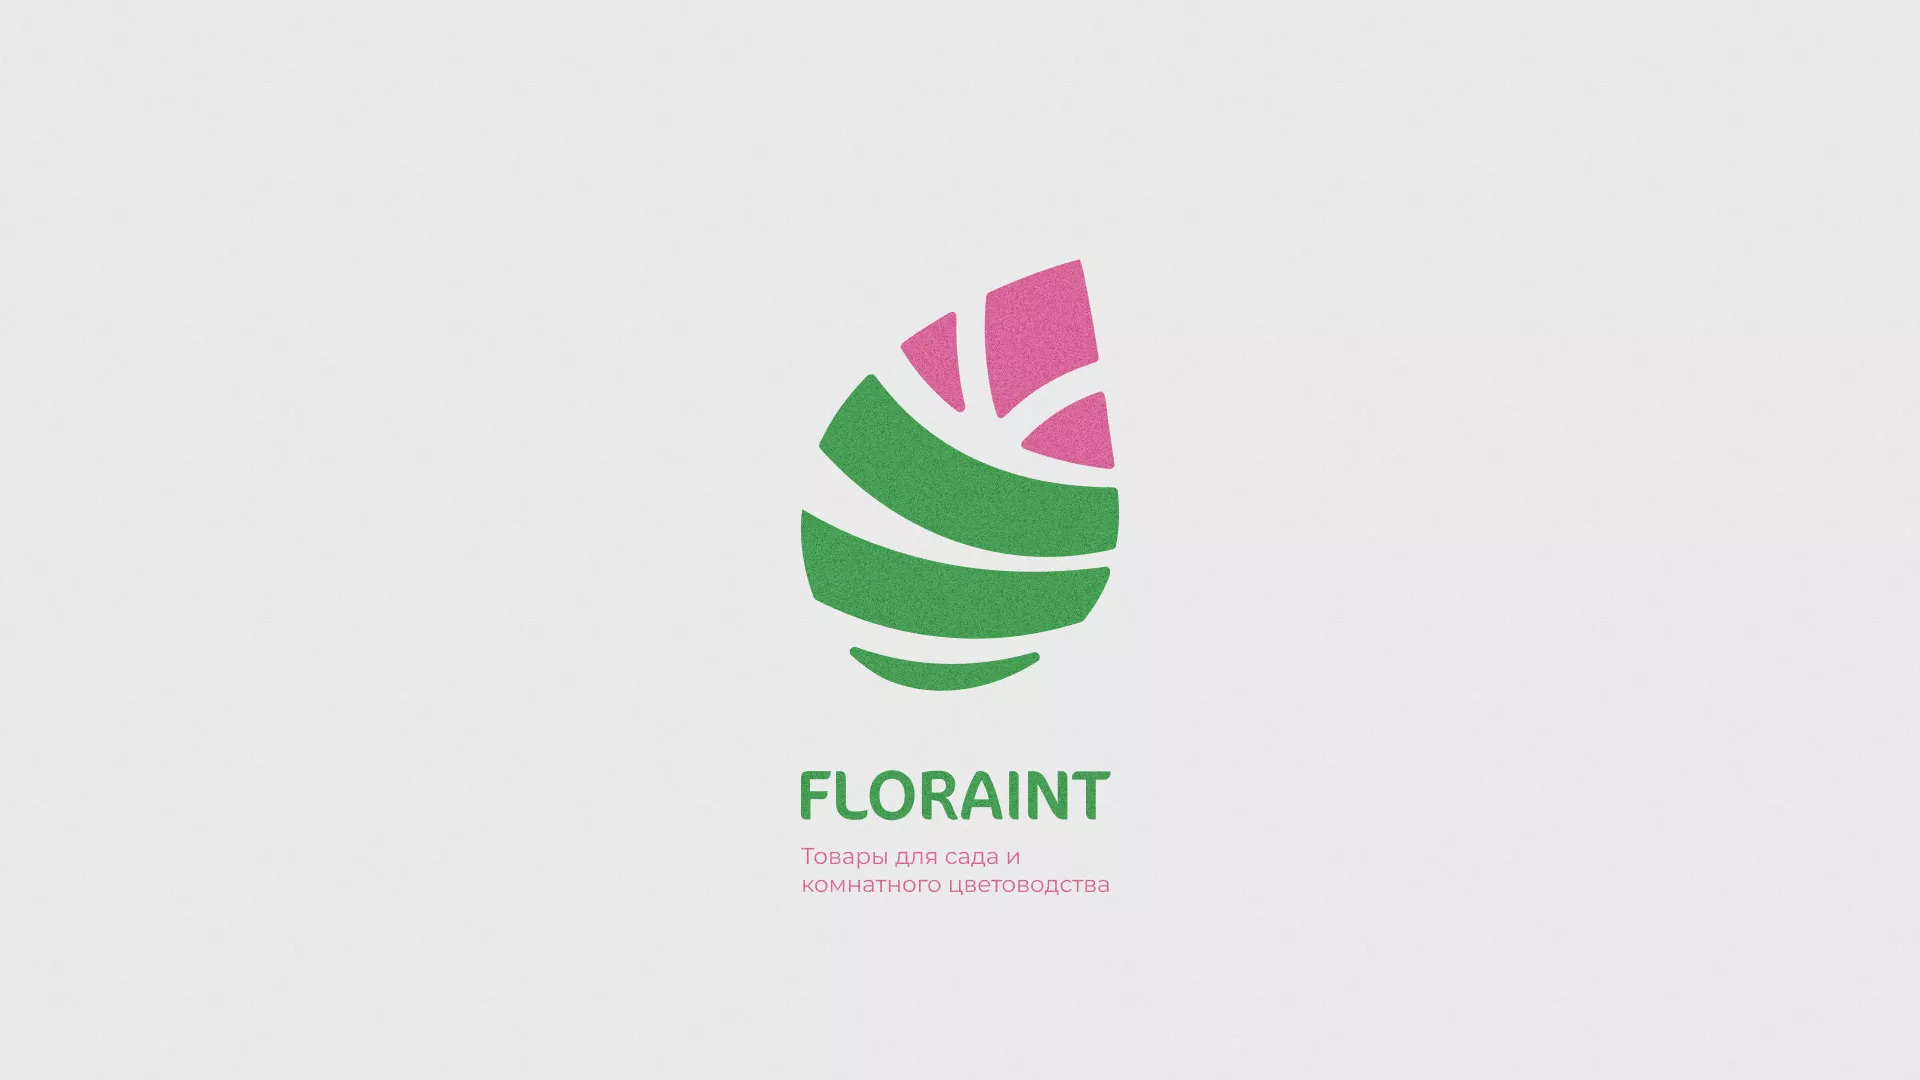 Разработка оформления профиля Instagram для магазина «Floraint» в Заполярном